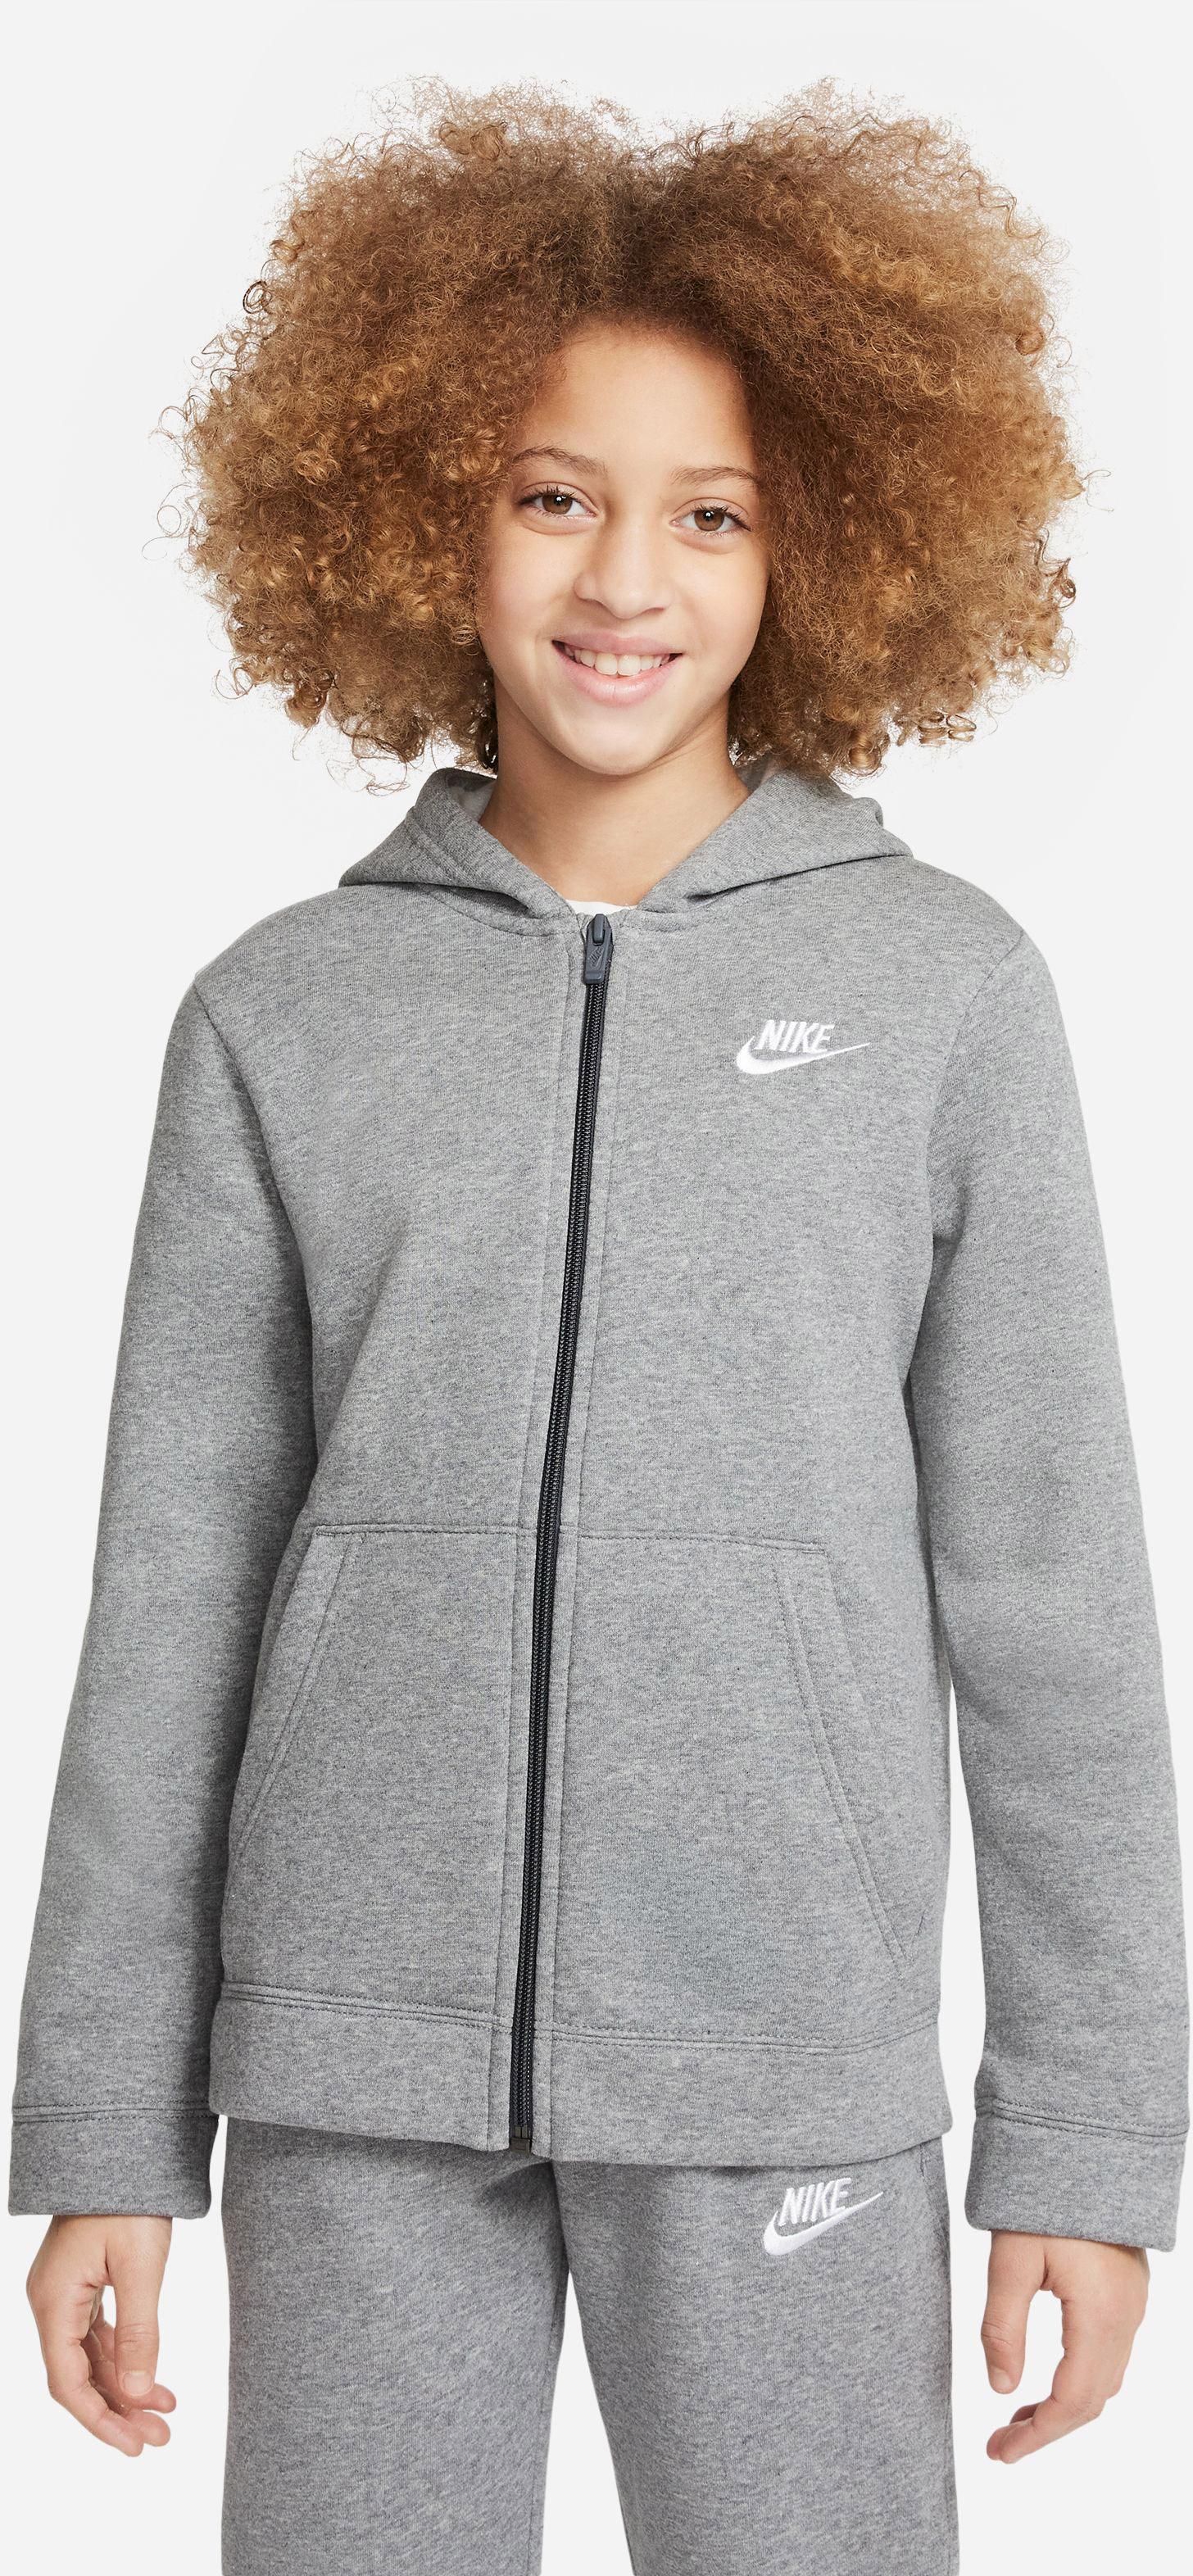 heather-dark Shop CORE Jungen Trainingsanzug Nike im Online NSW carbon von kaufen grey-white SportScheck